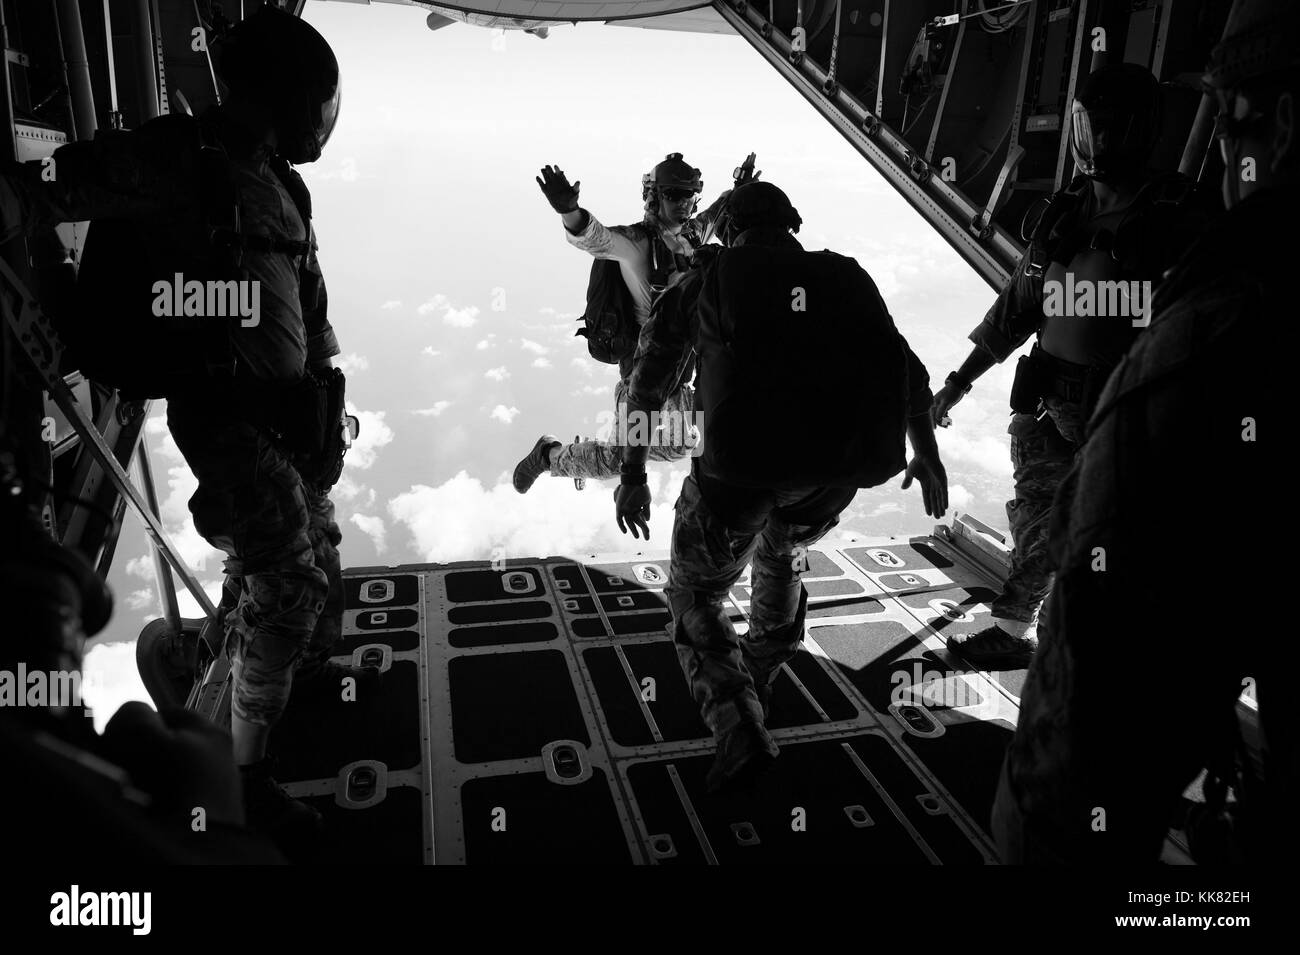 Die Beseitigung von Explosivstoffen EOD Techniker für die Beseitigung von Explosivstoffen Mobile Einheit EODMU 5 zugewiesenen Aufgaben einen freien Fall Sprung von einer C-130 Hercules bei einer militärischen freien Fall springen sustainment Ausbildung in Santa Rita, Guam. Mit freundlicher Petty Officer 1st Class Ace Rheaume/US Navy, 2015. Stockfoto